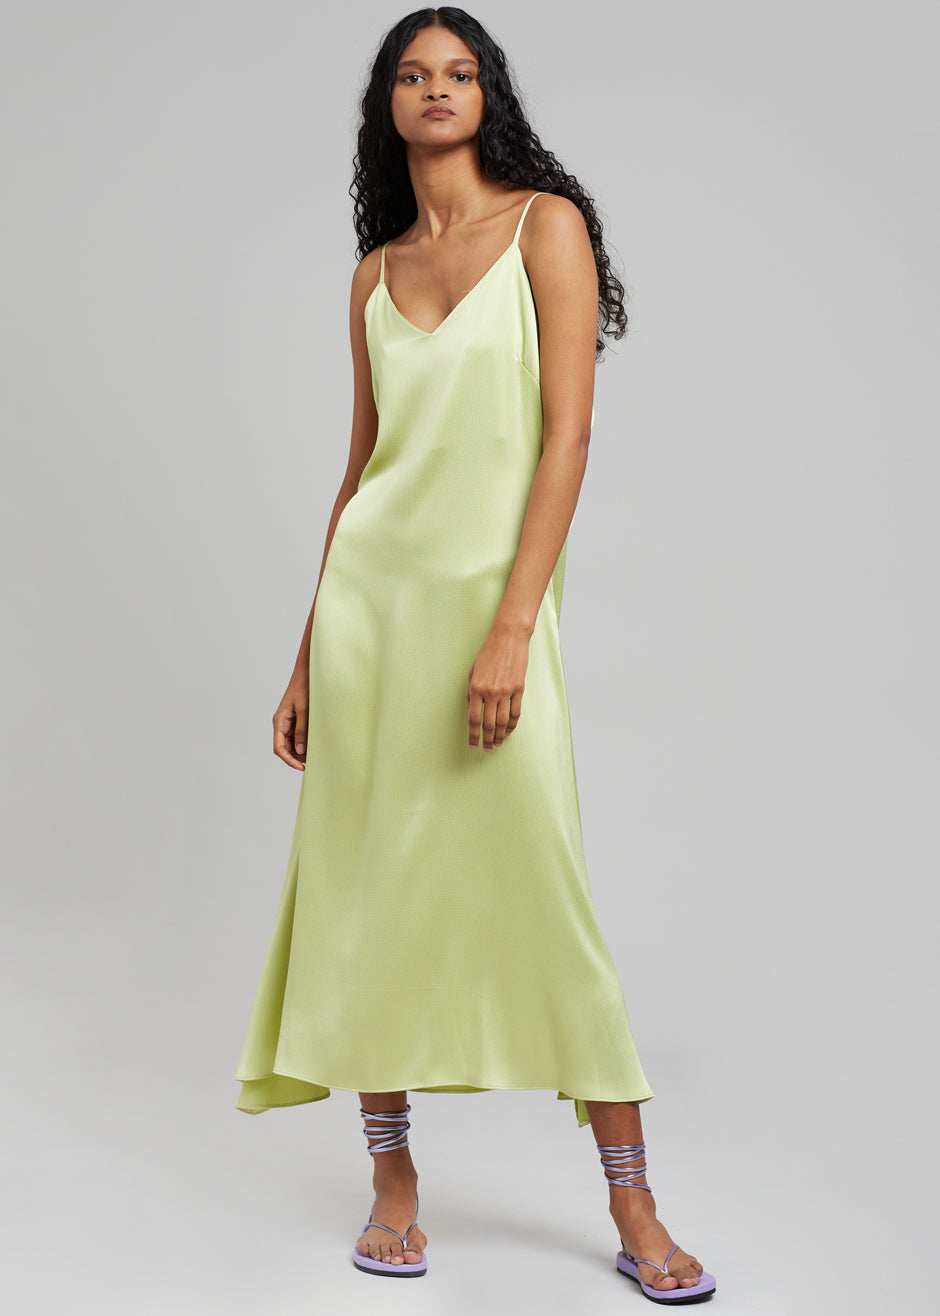 Cordelia Satin Dress - Lime